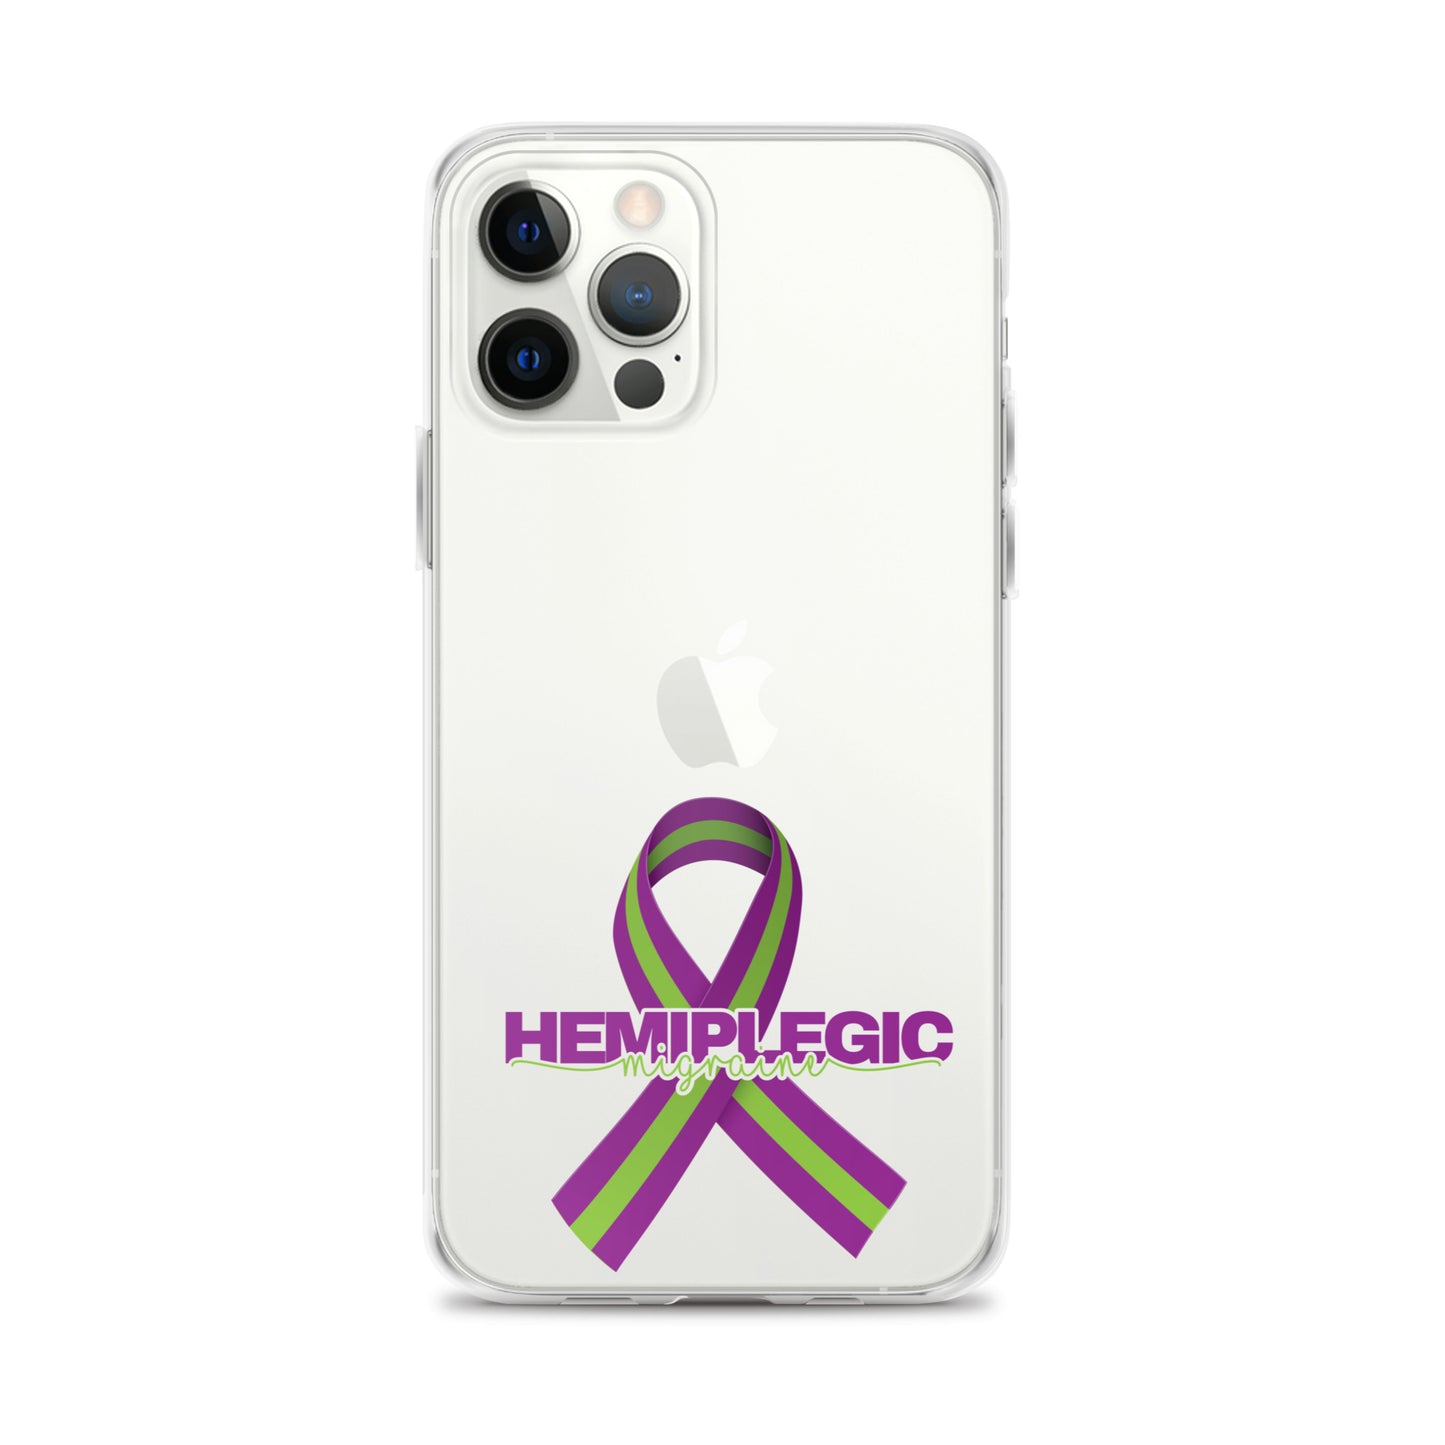 HM iPhone Case